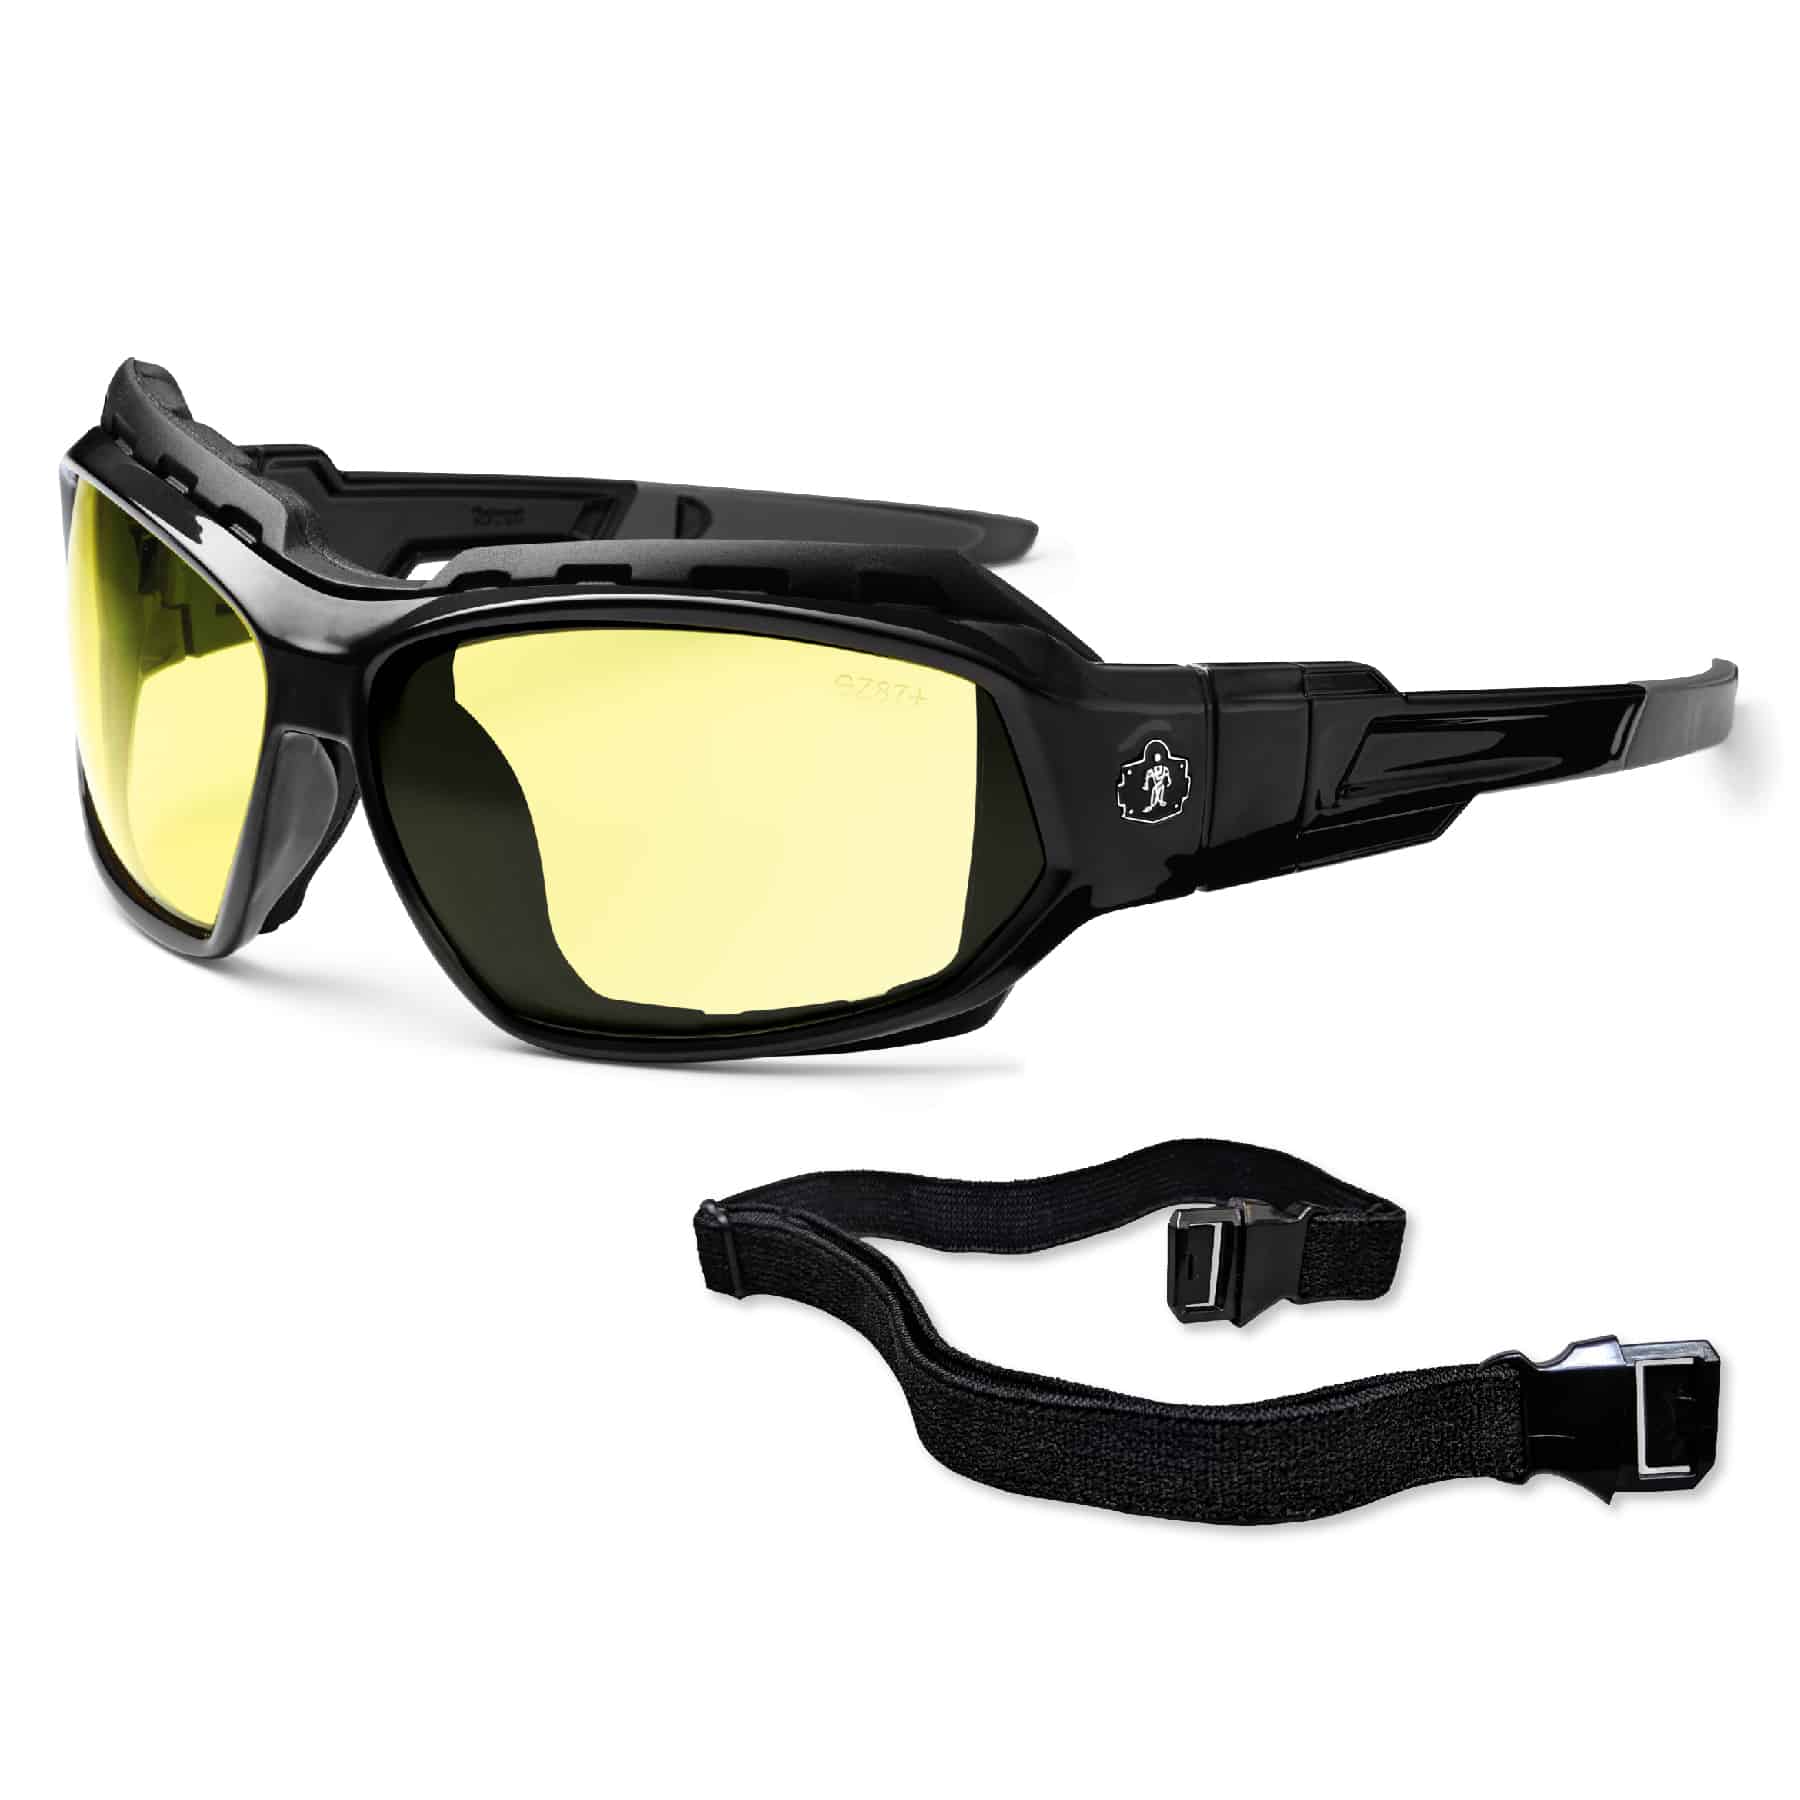 Skullerz® Loki Safety Glasses // Sunglasses